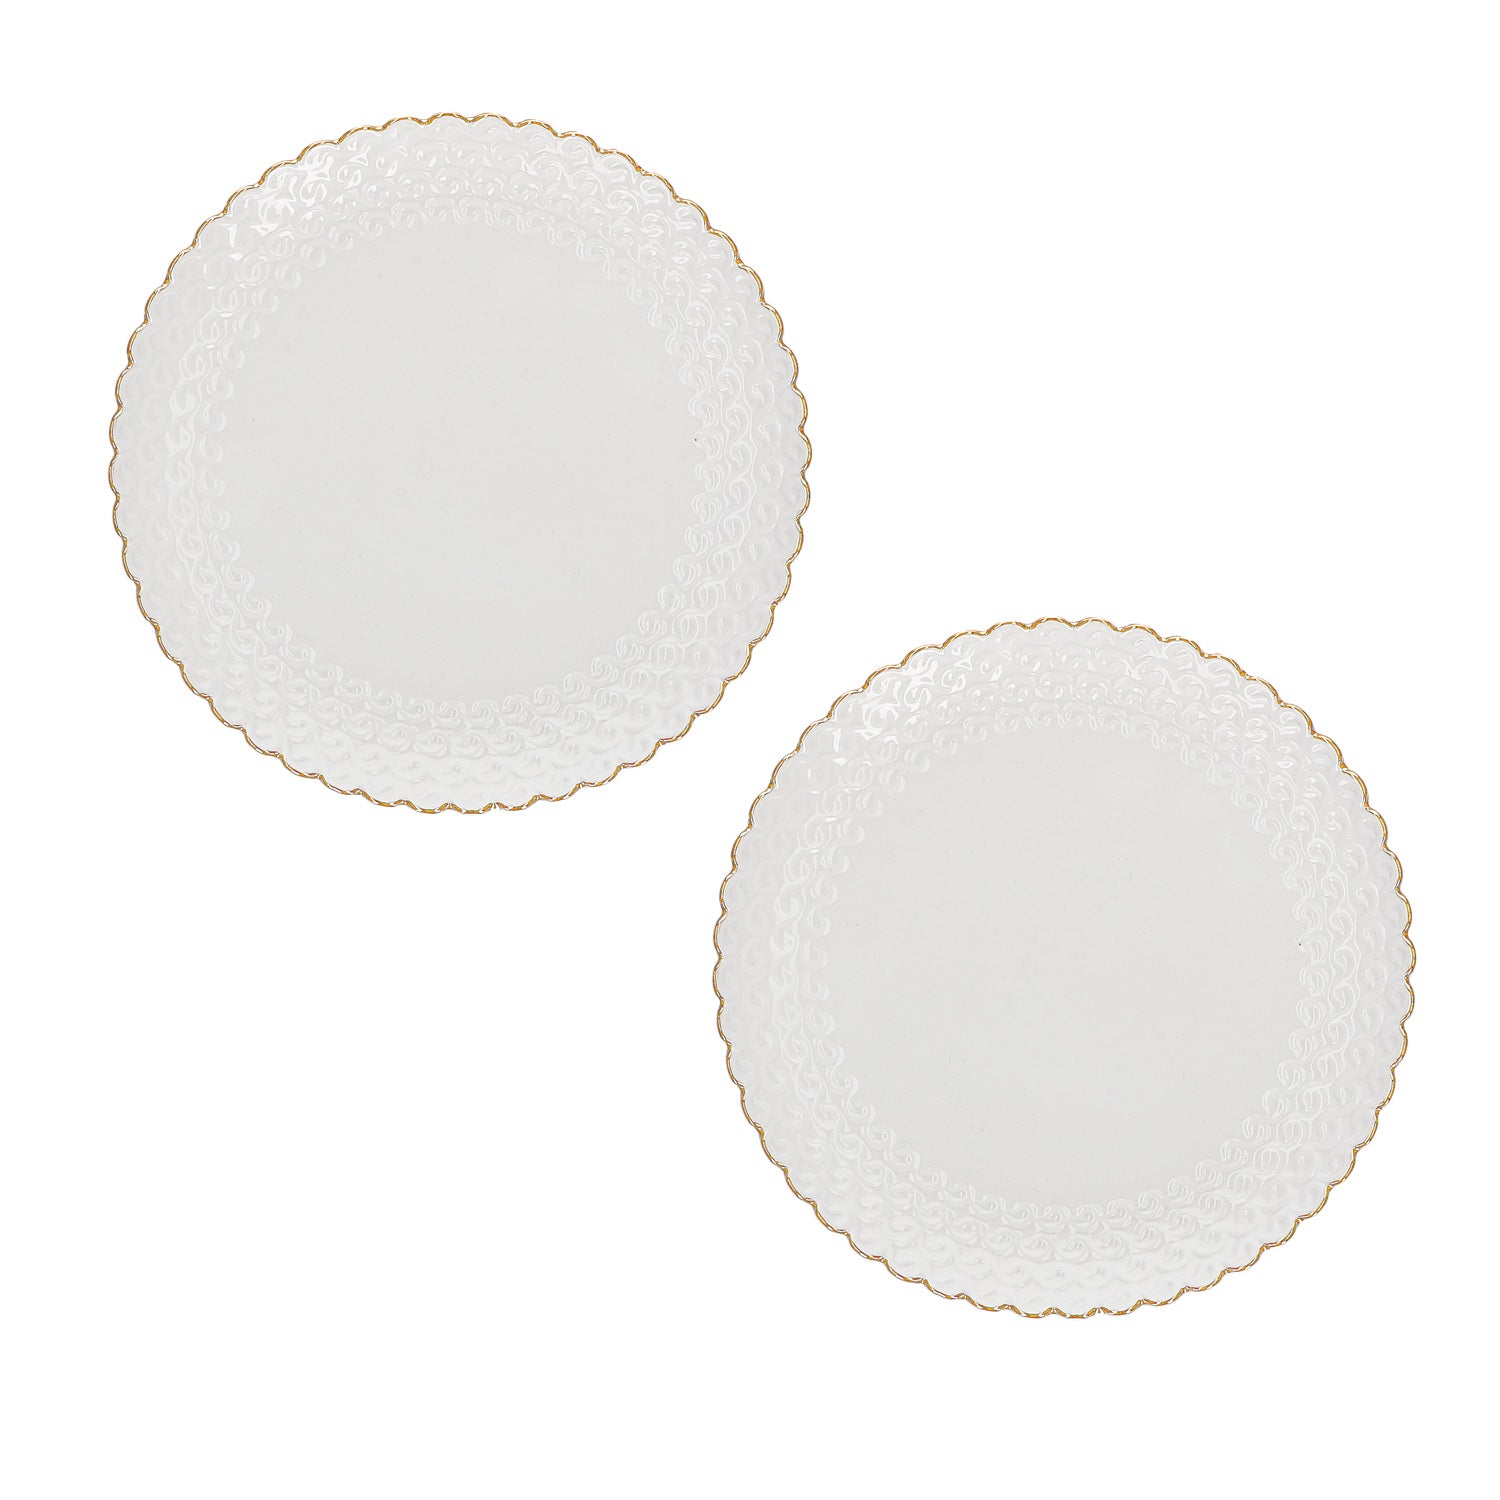 Set di 2 piattini per dolce in porcellana bianca e decoro dorato. Dimensioni: 18 x 18 x h 2,5 cm Lavare a mano.